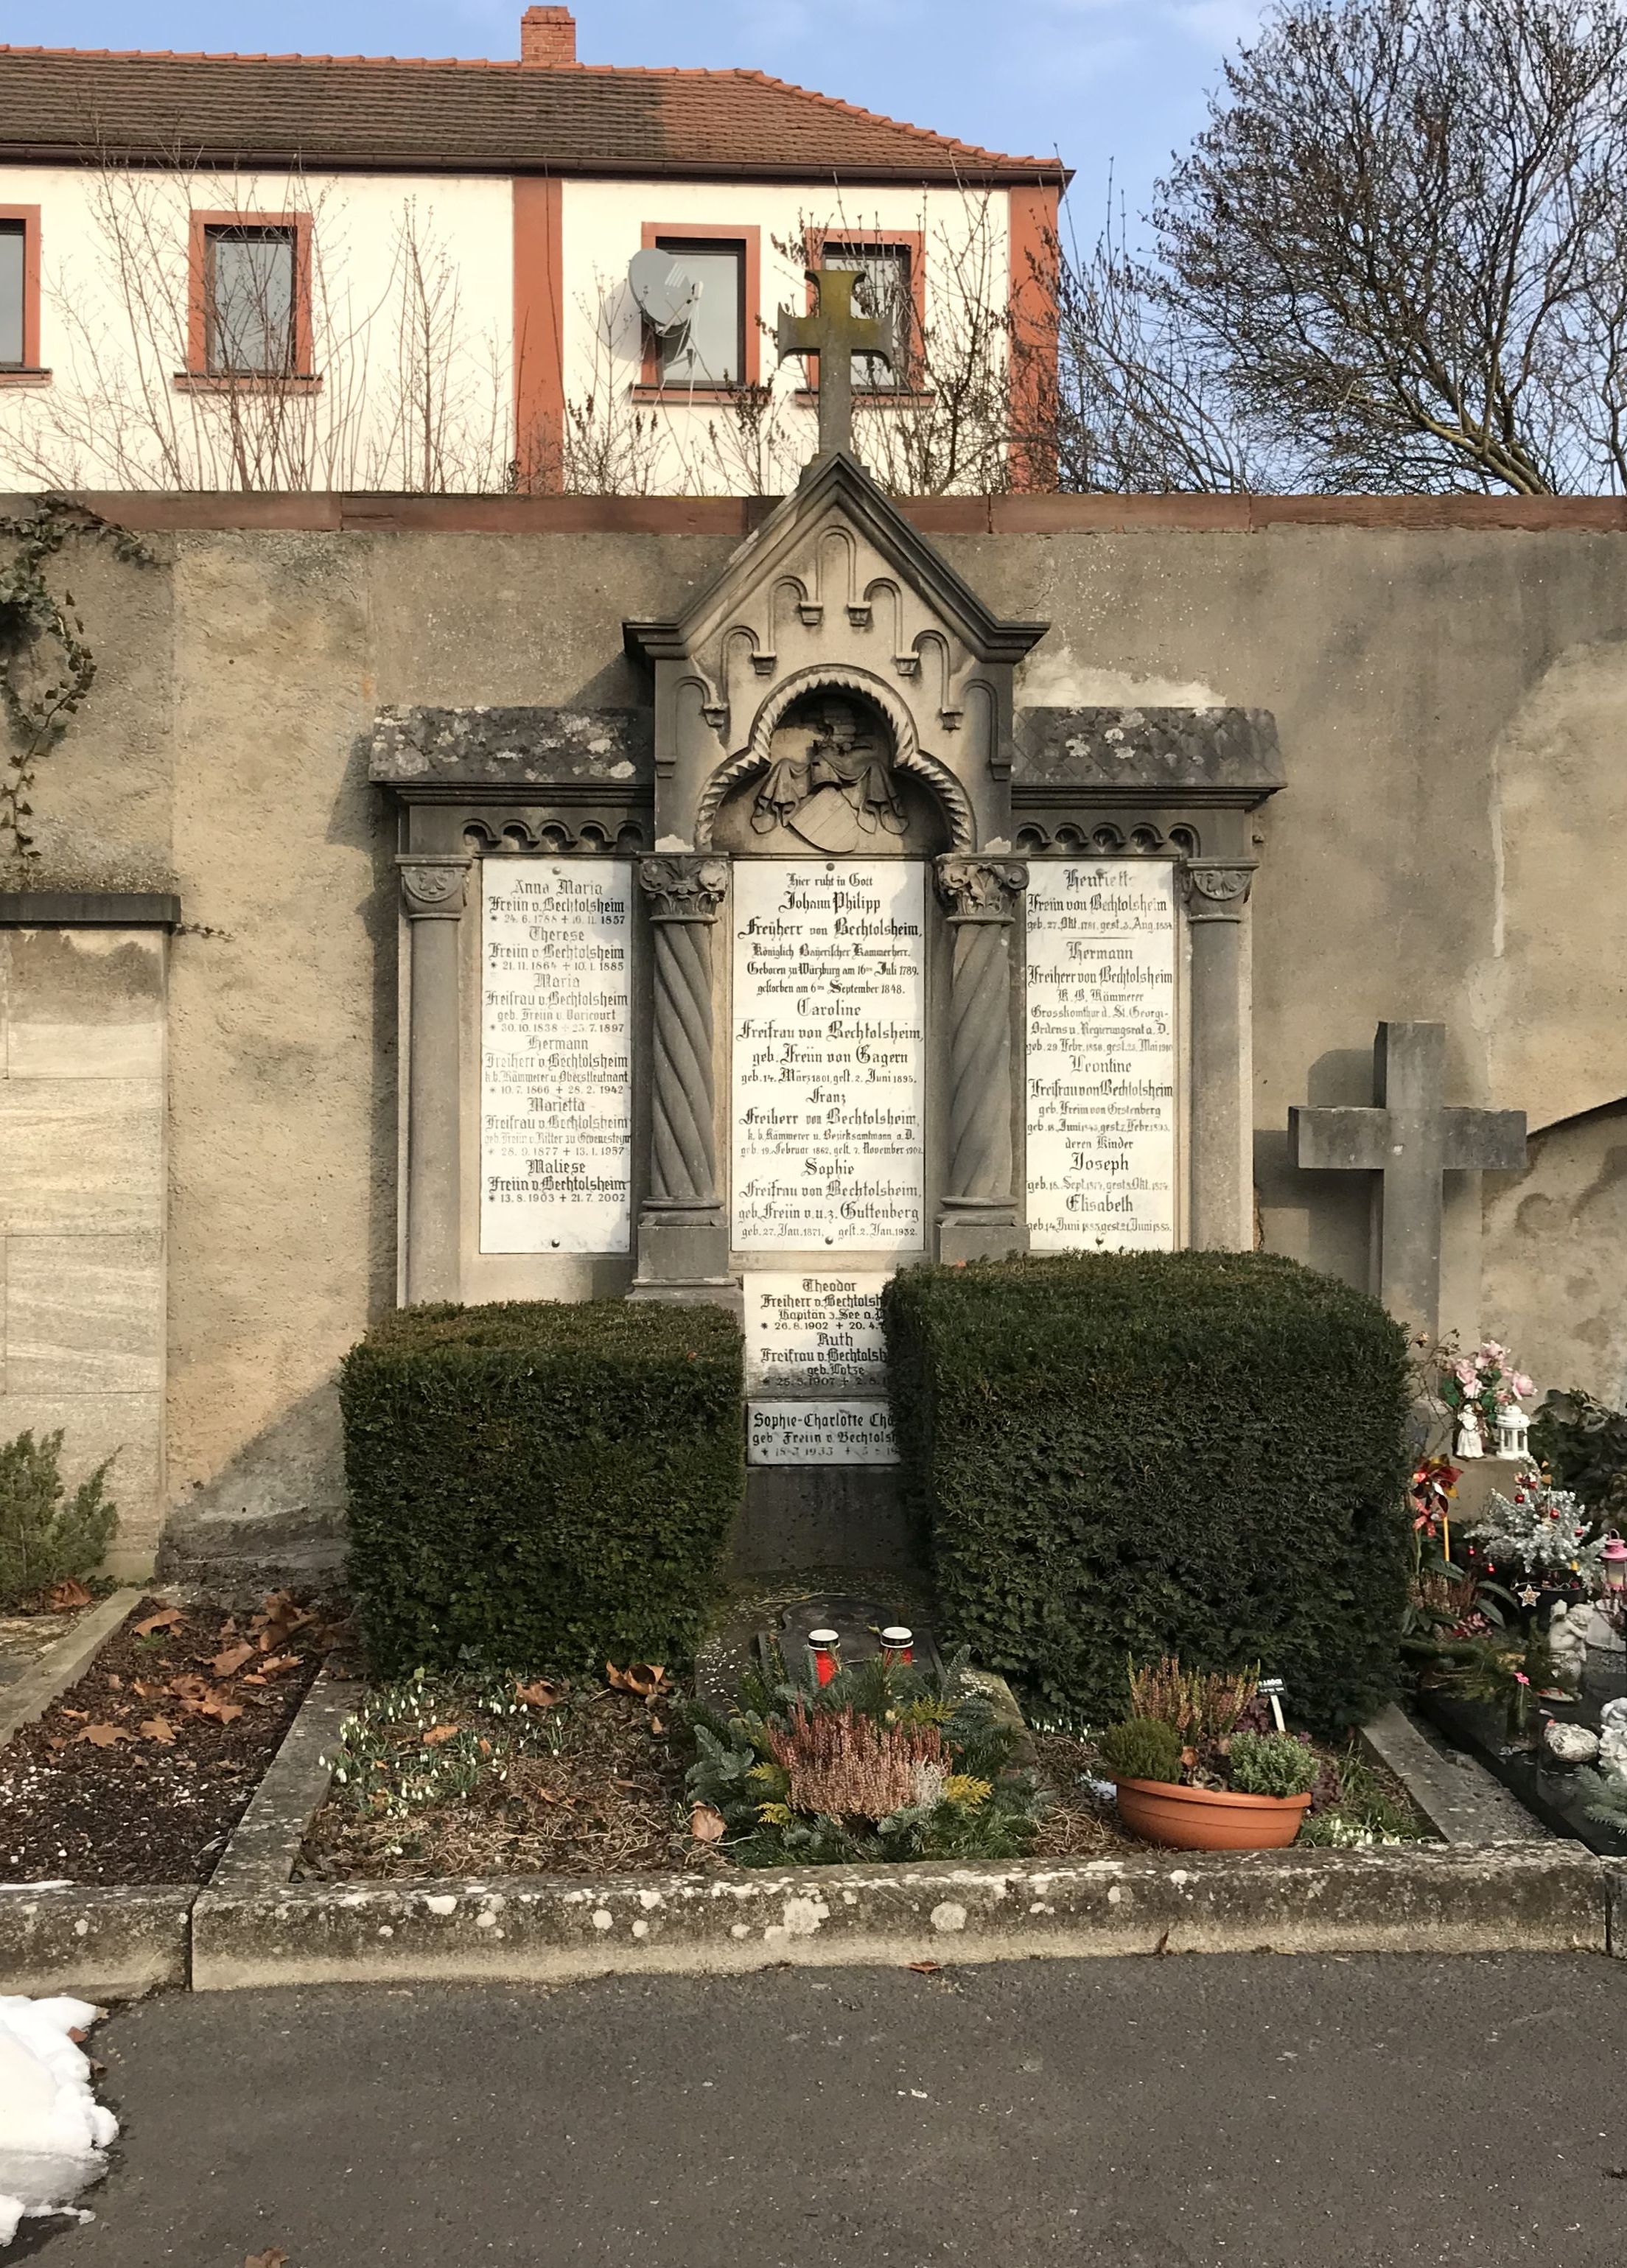 Grabstein Theodor Freiherr von Mauchenheim genannt Bechtolsheim, Hauptfriedhof Würzburg, Unterfranken, Bayern, Deutschland